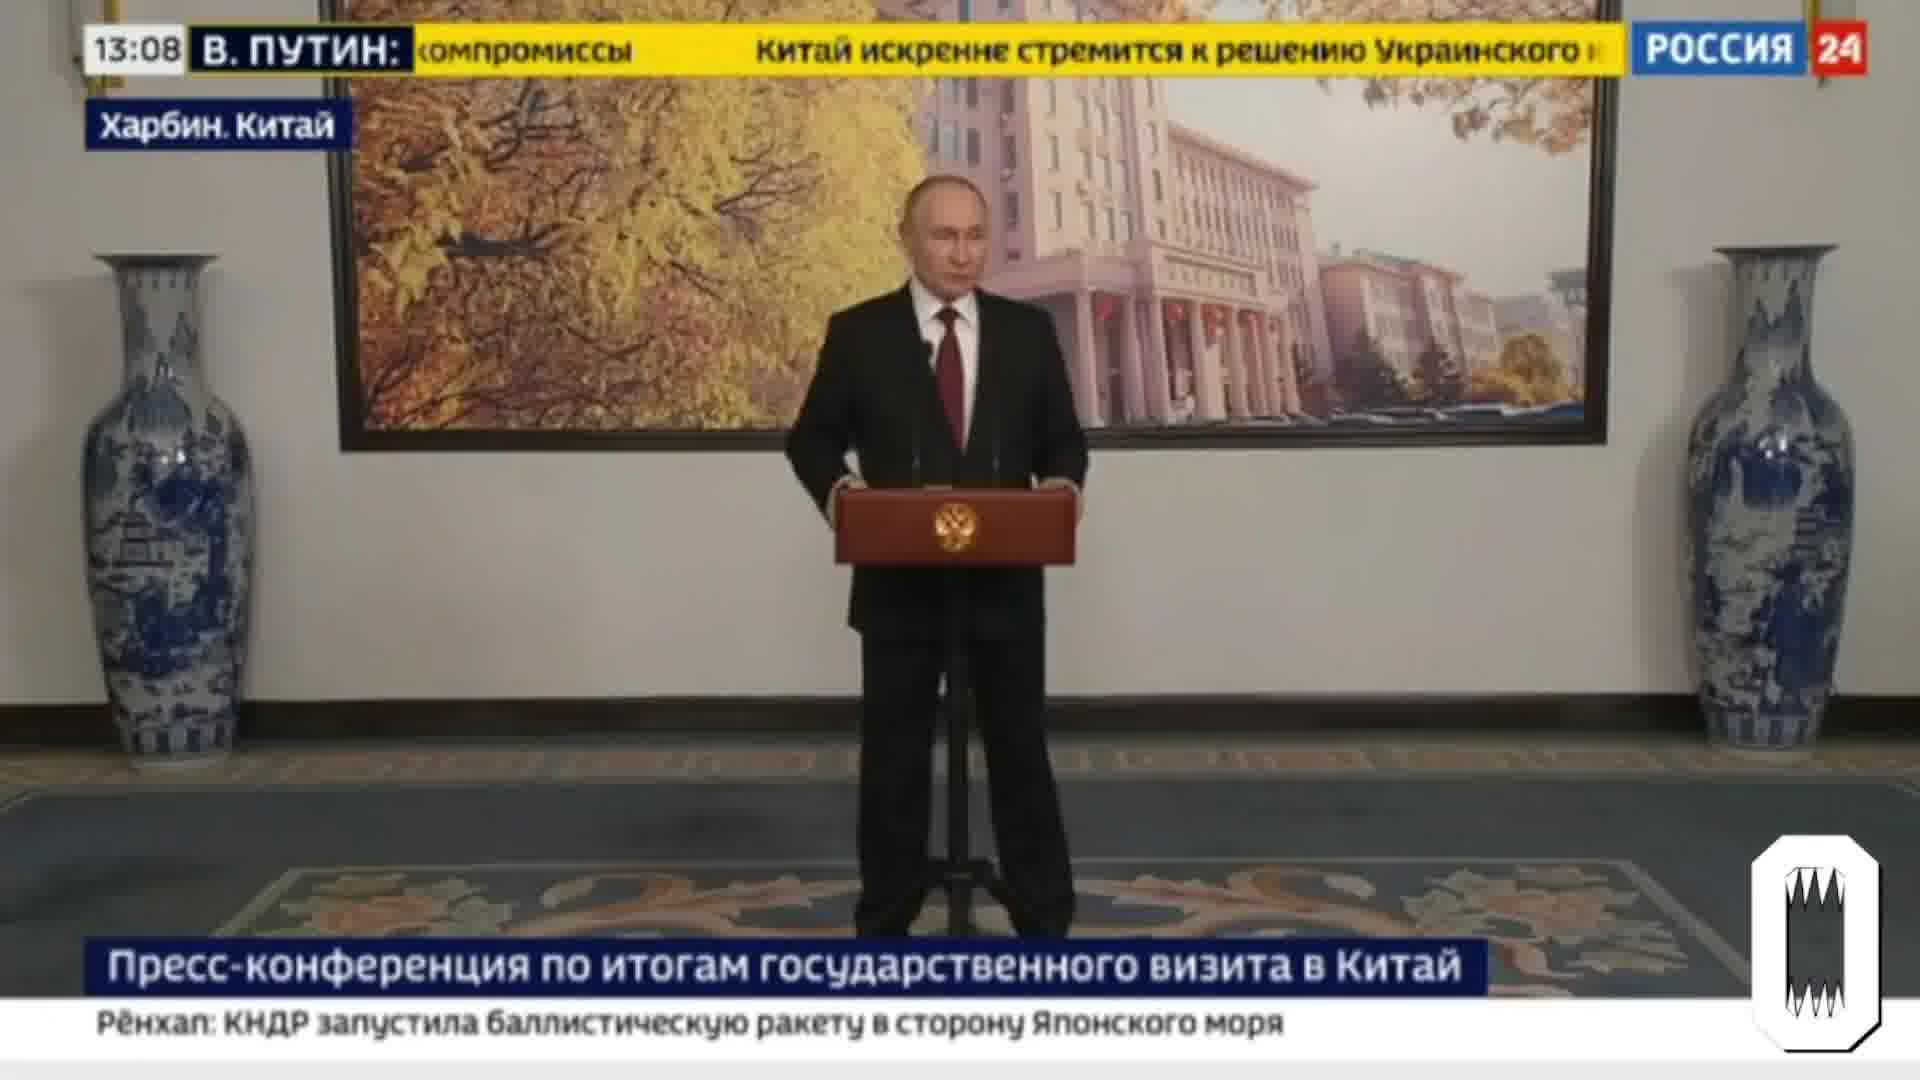 Putin afferma che l'esercito russo non ha l'ordine di catturare Kharkiv, le truppe stanno creando una zona sanitaria vicino al confine